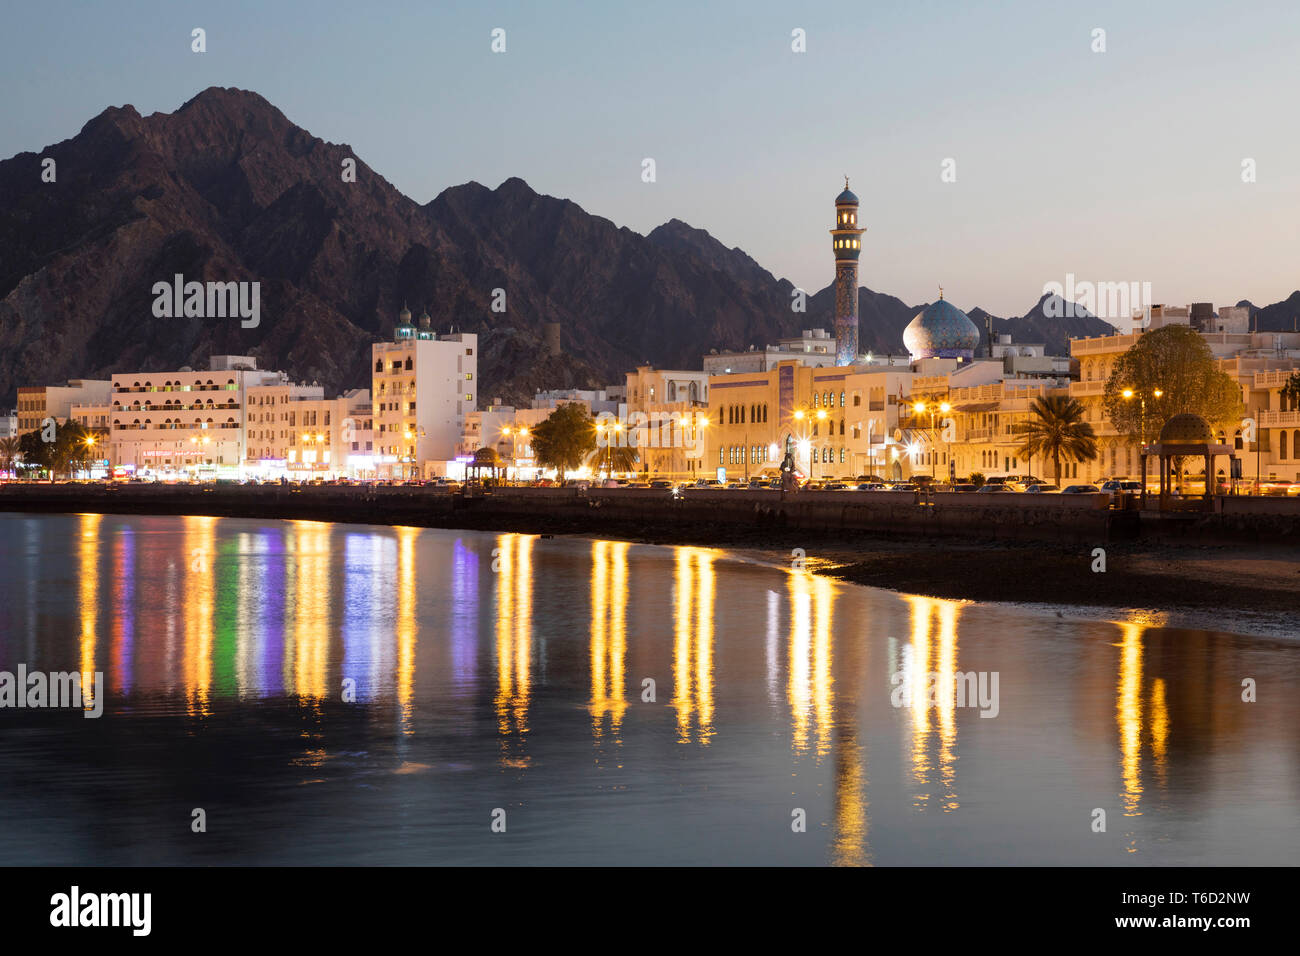 Moyen-orient, Oman, Muscat. La Corniche de Muttrah dans la nuit Banque D'Images